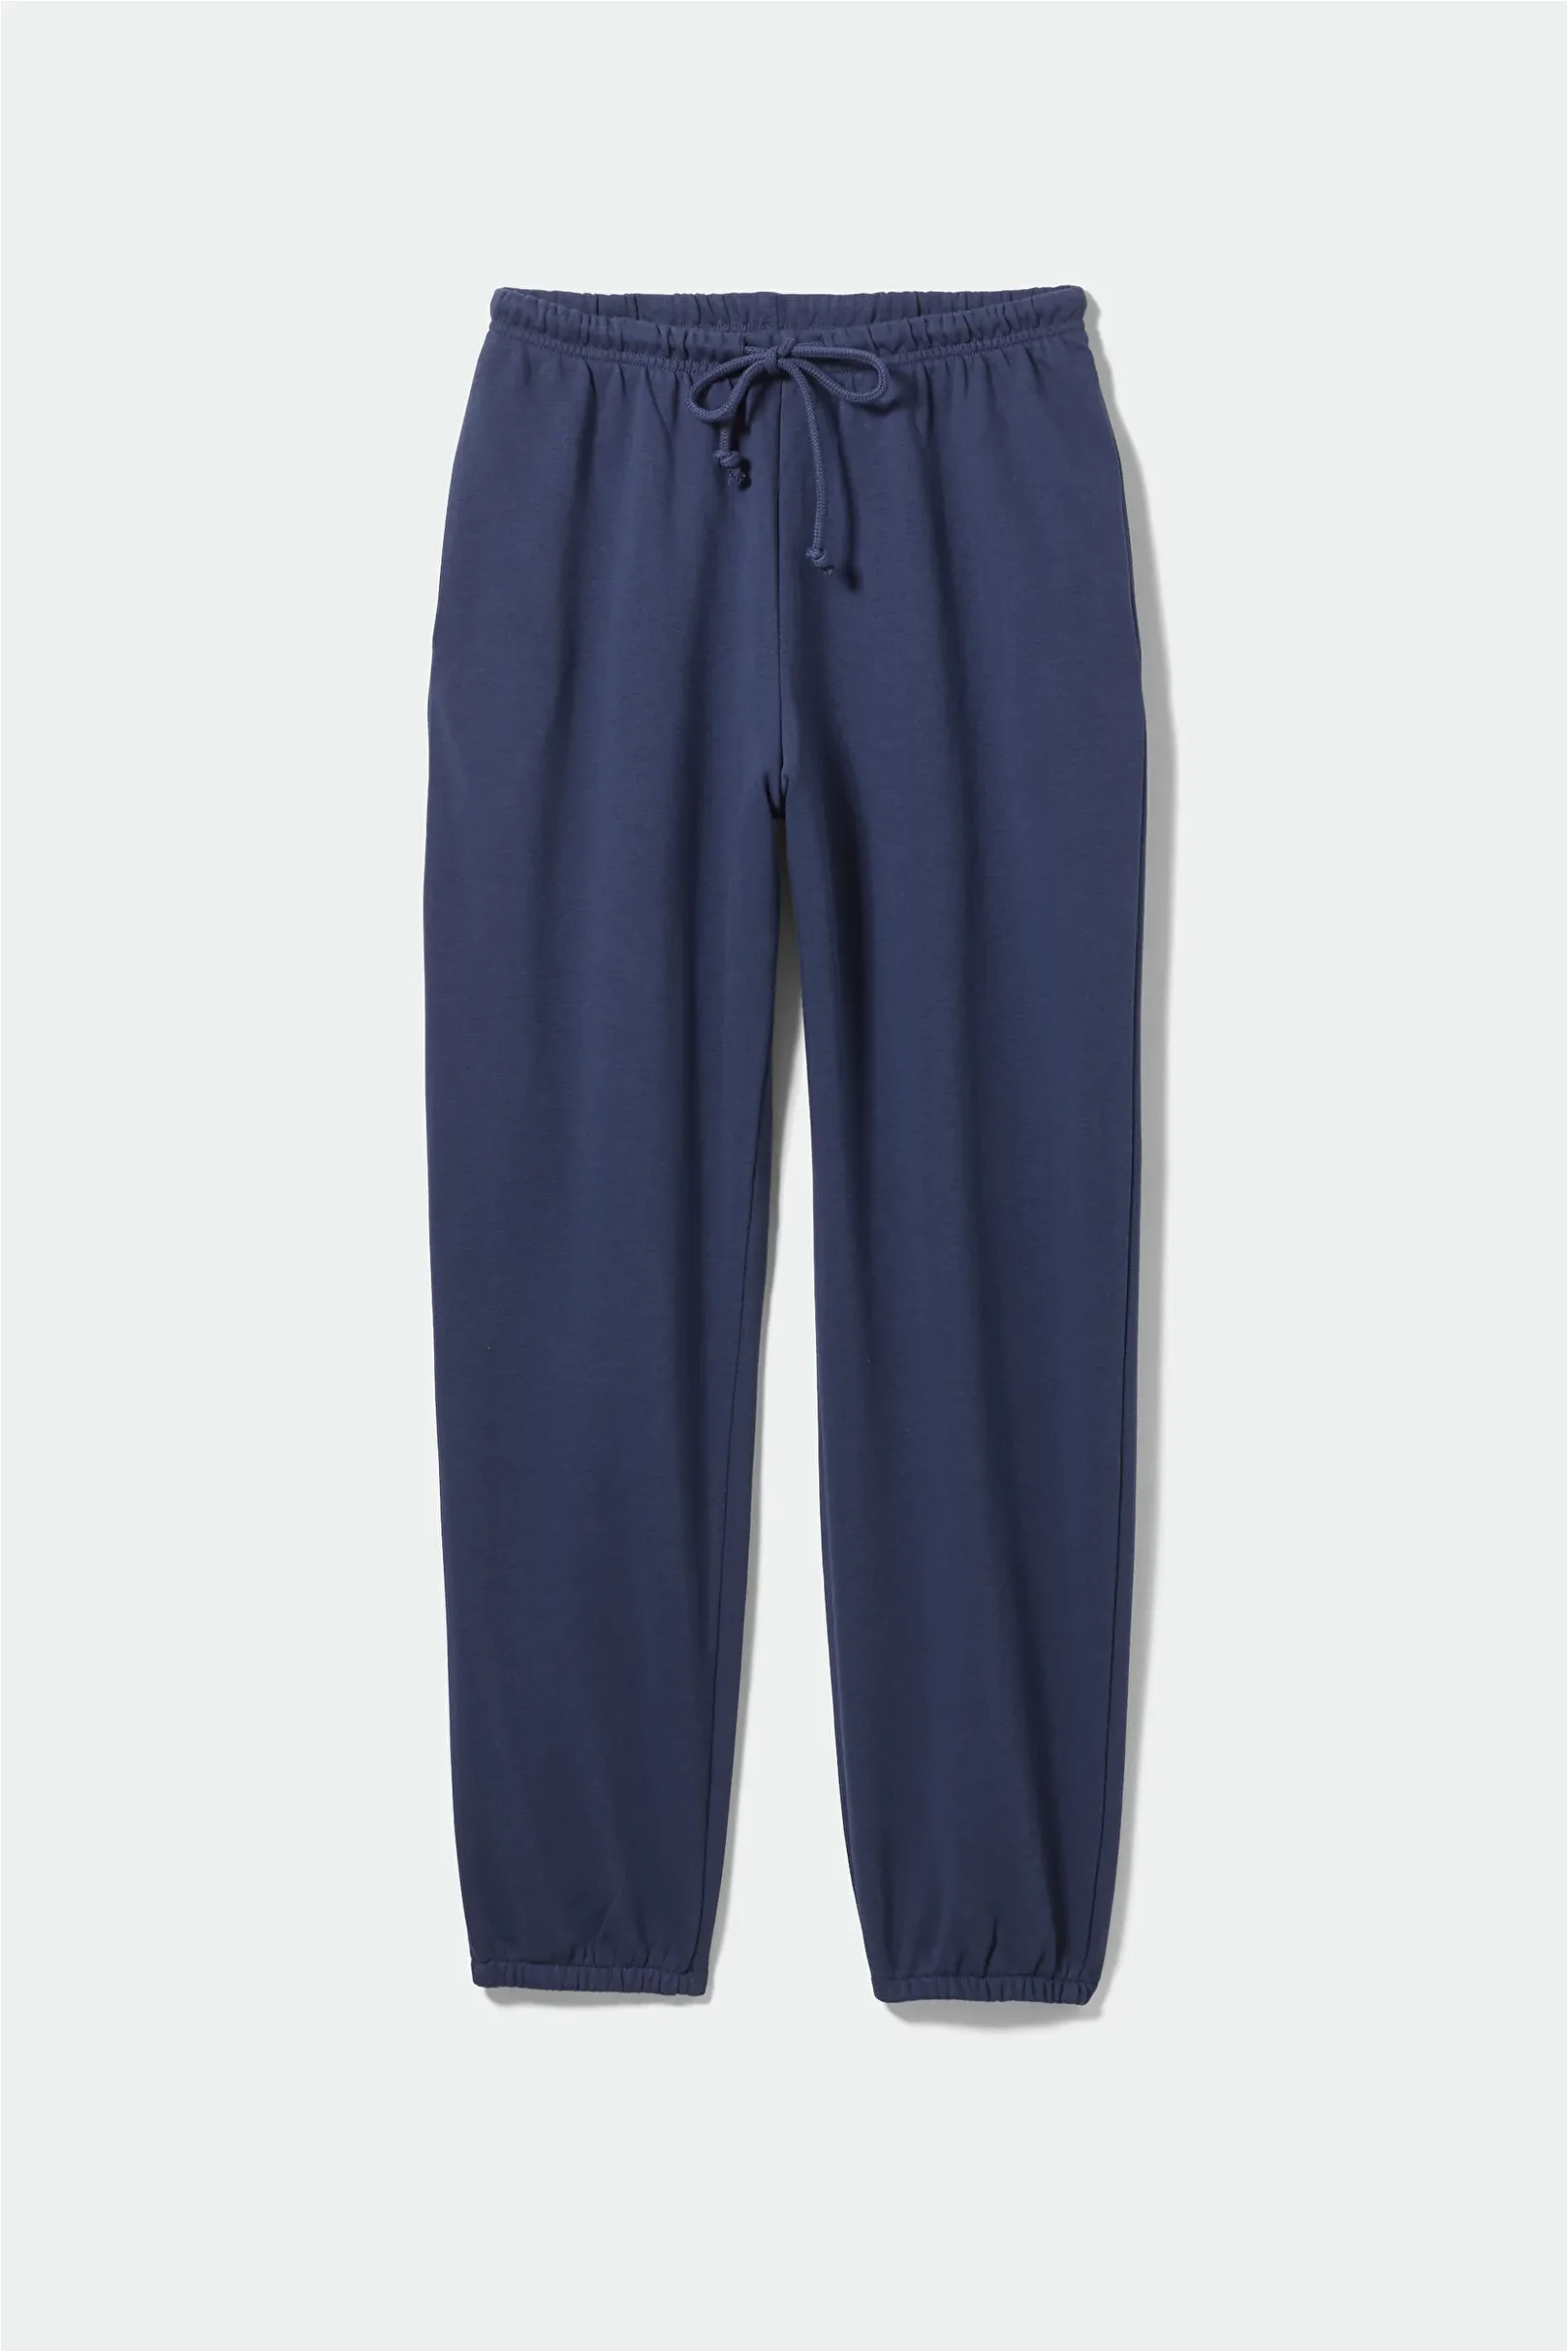 WEEKDAY Easy Standard Sweatpants in Dark blue | Endource